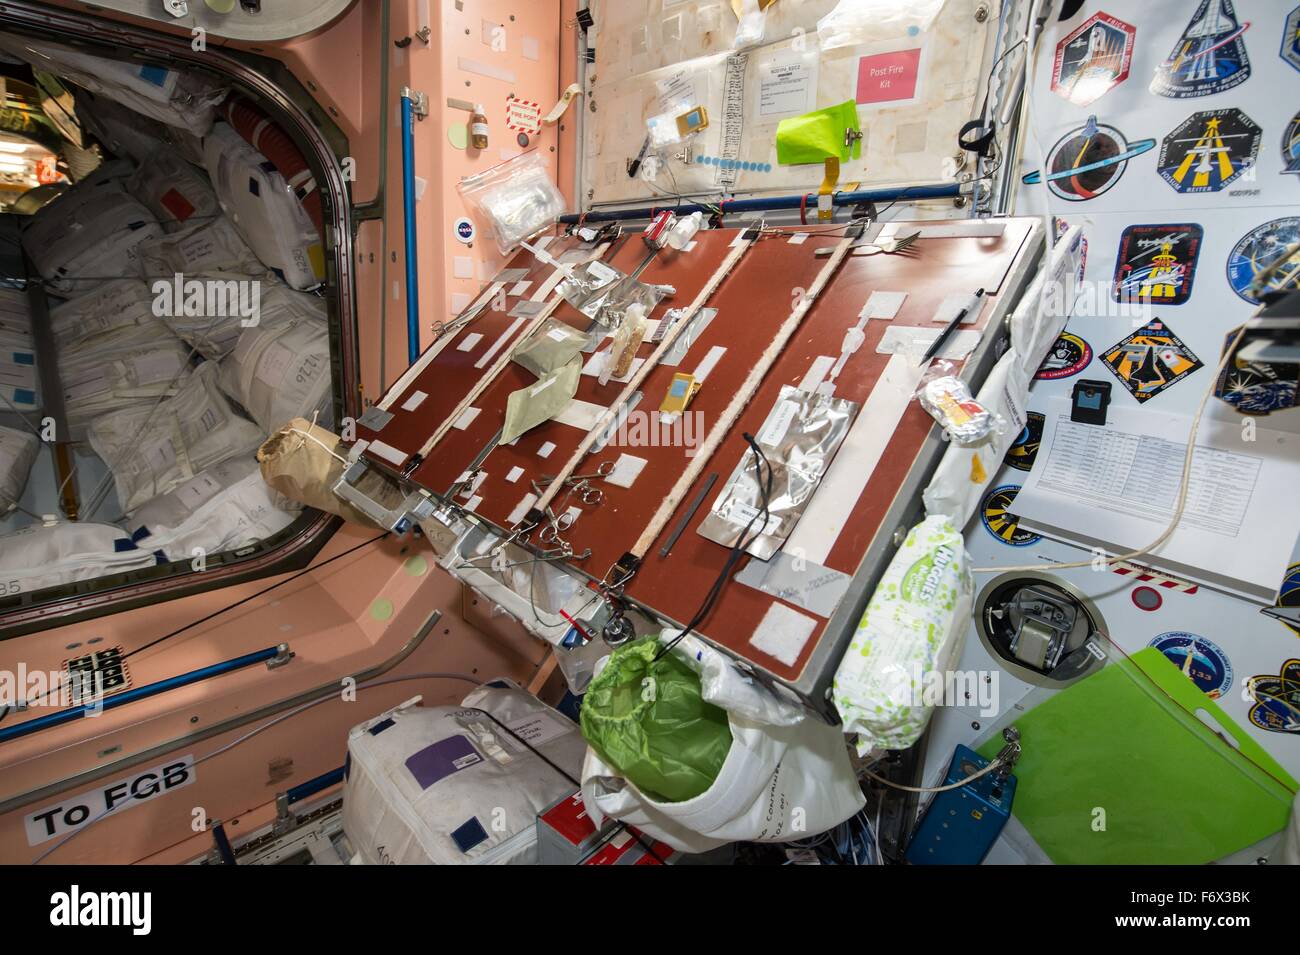 La cuisine table dans le module Unity, affichant les emballages des aliments prévu pour le repas de Thanksgiving de l'équipage à bord de la Station spatiale internationale le 23 novembre 2014 dans l'orbite de la Terre. Banque D'Images